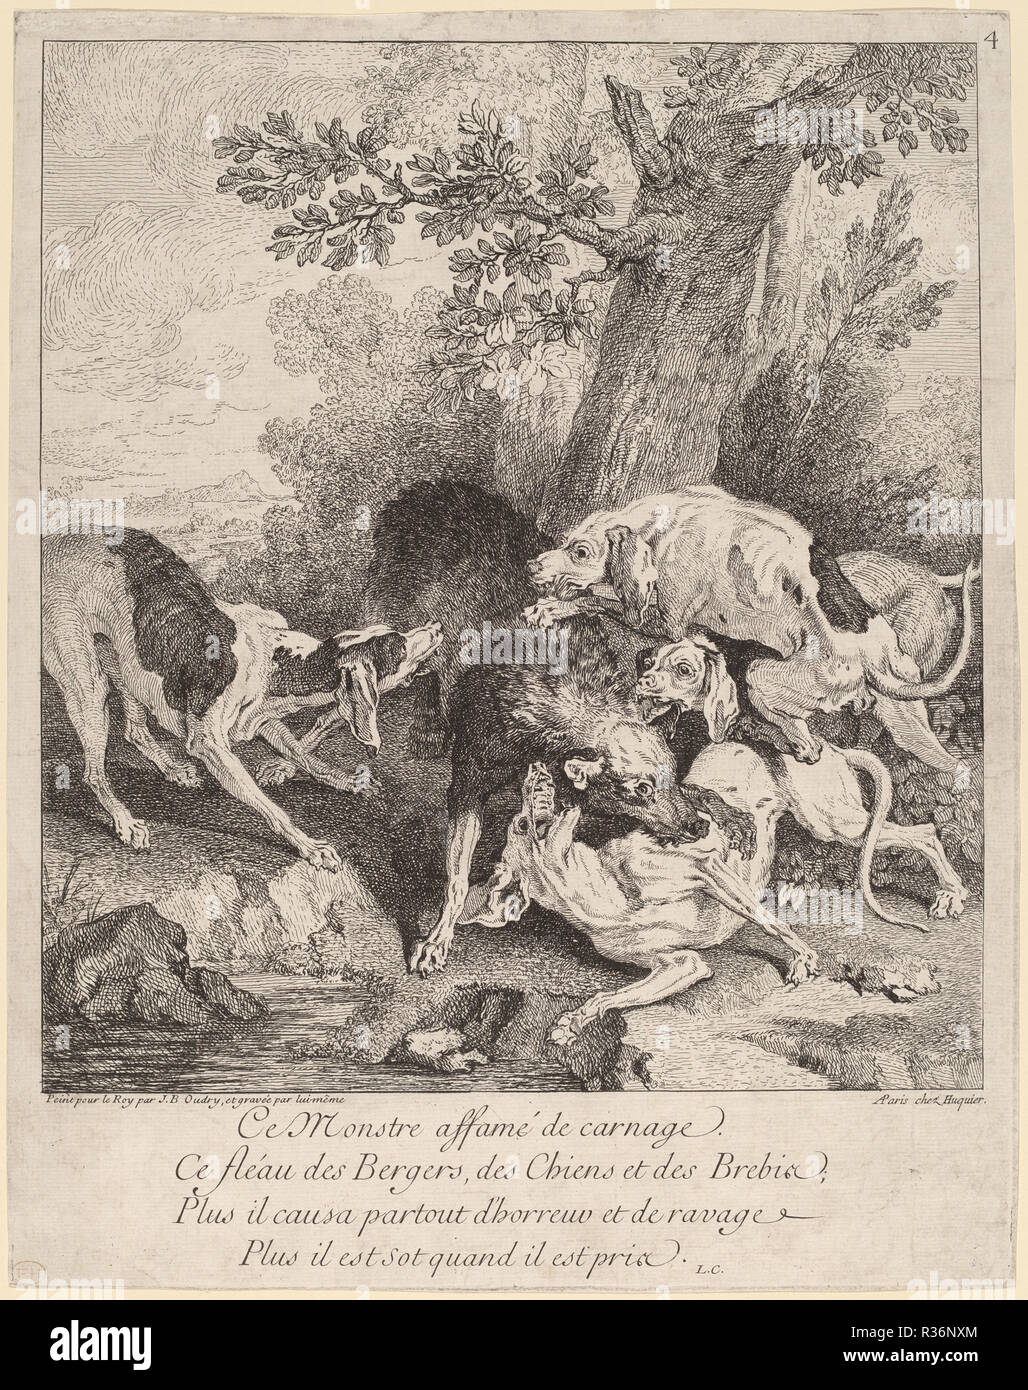 Ein Wolf von Hunden angegriffen. Stand: 1725. Abmessungen: Platte: 37,4 x 29,2 cm (14 3/4 x 11 1/2 in.) Blatt: 37,4 x 29,6 cm (14 3/4 x 11 5/8 in.). Medium: Radierung auf Bütten. Museum: Nationalgalerie, Washington DC. Thema: Jean-Baptiste Oudry. Stockfoto